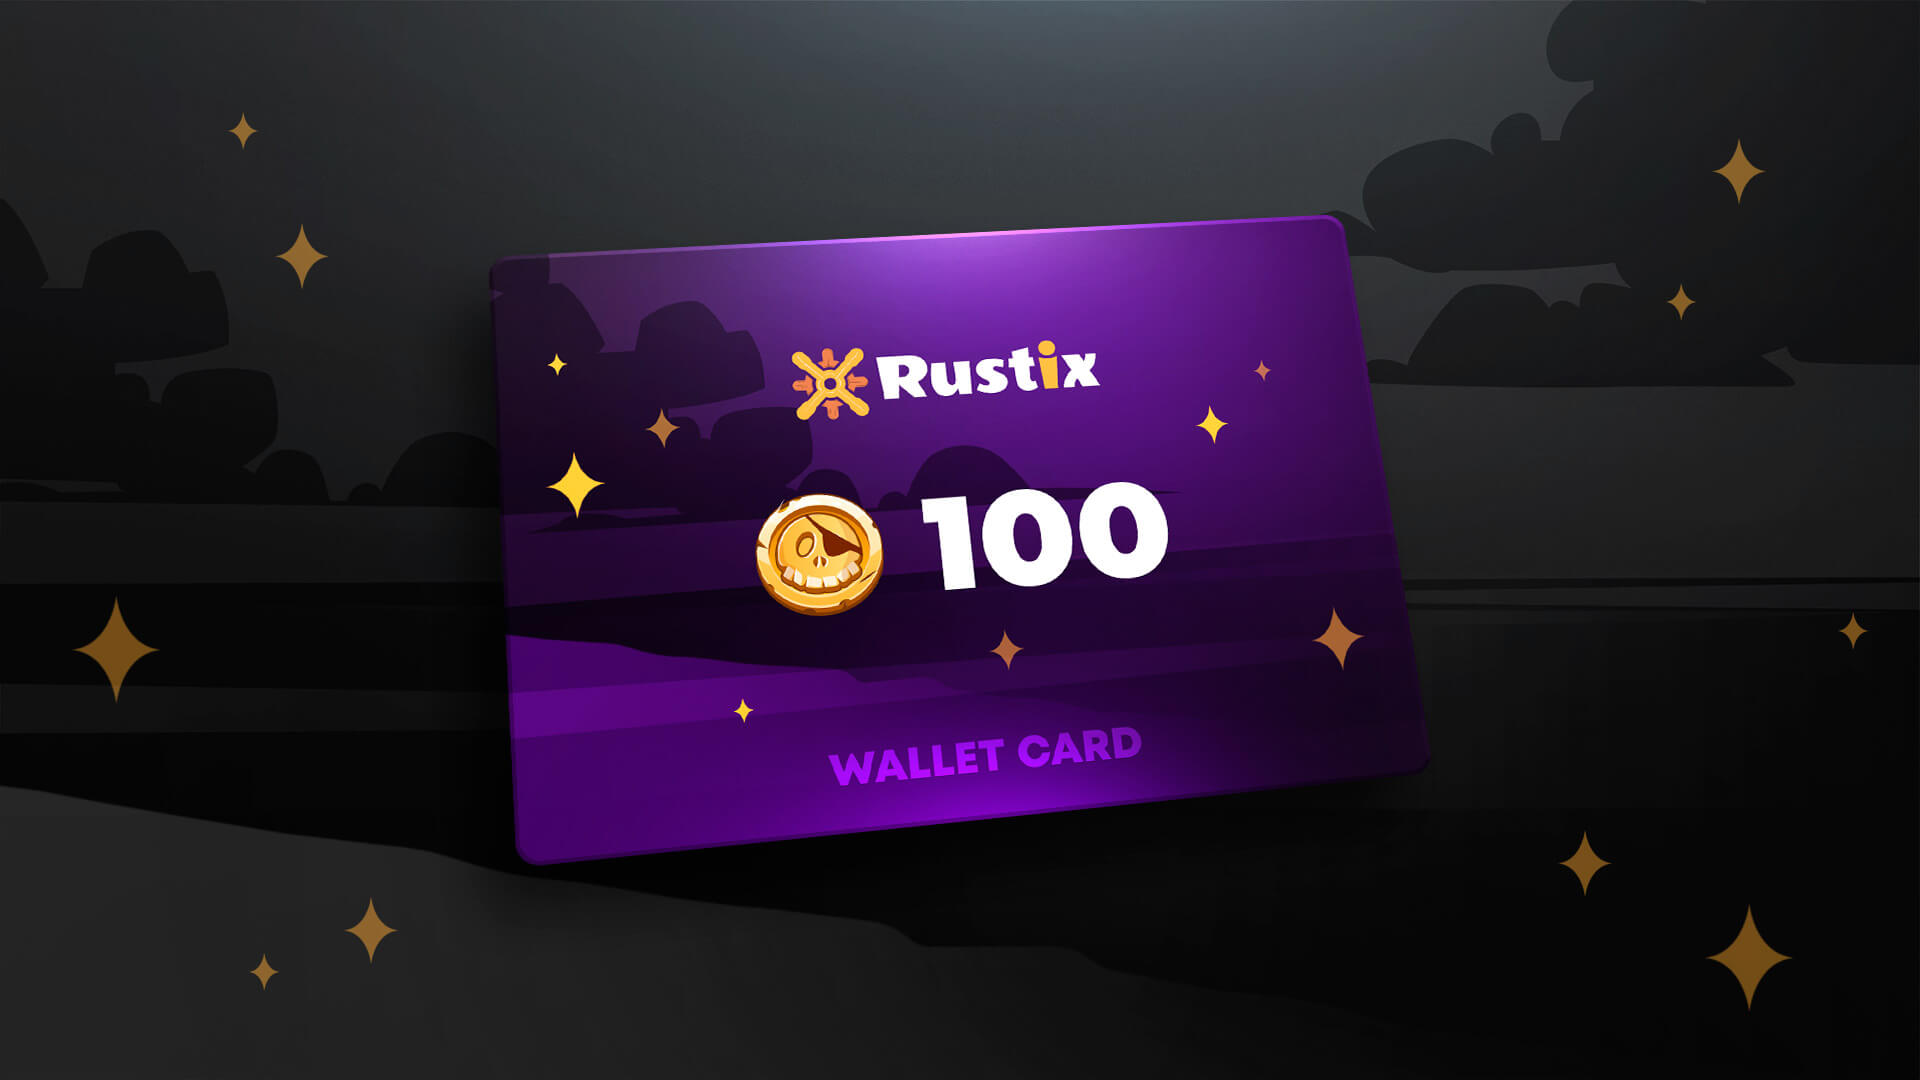 Rustix.io 100 USD Wallet Card Code